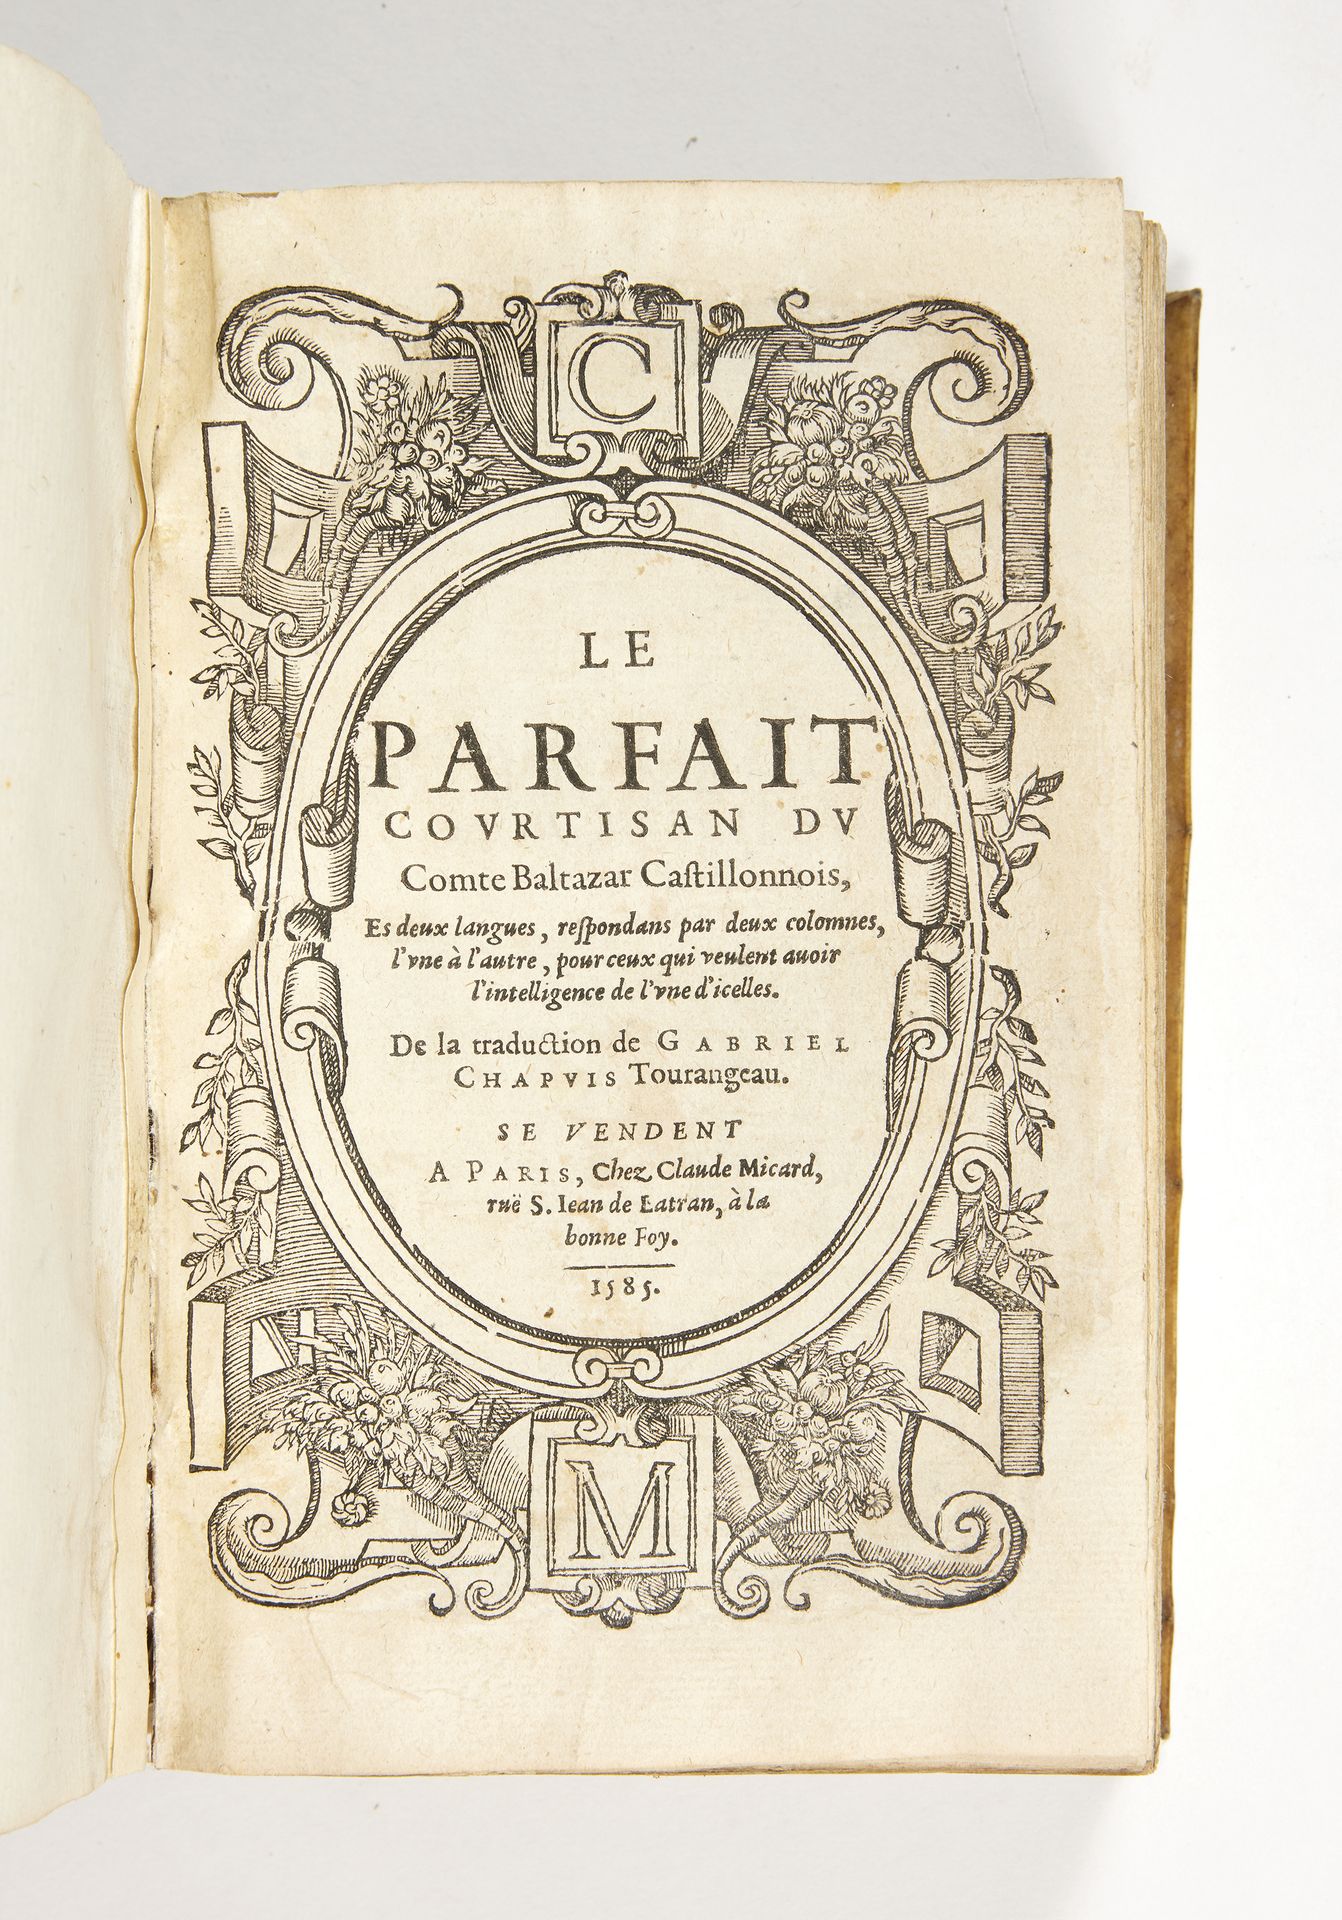 CASTIGLIONE, comte Baldassare Le Parfait Courtisan.
Traduzione di Gabriel Chapui&hellip;